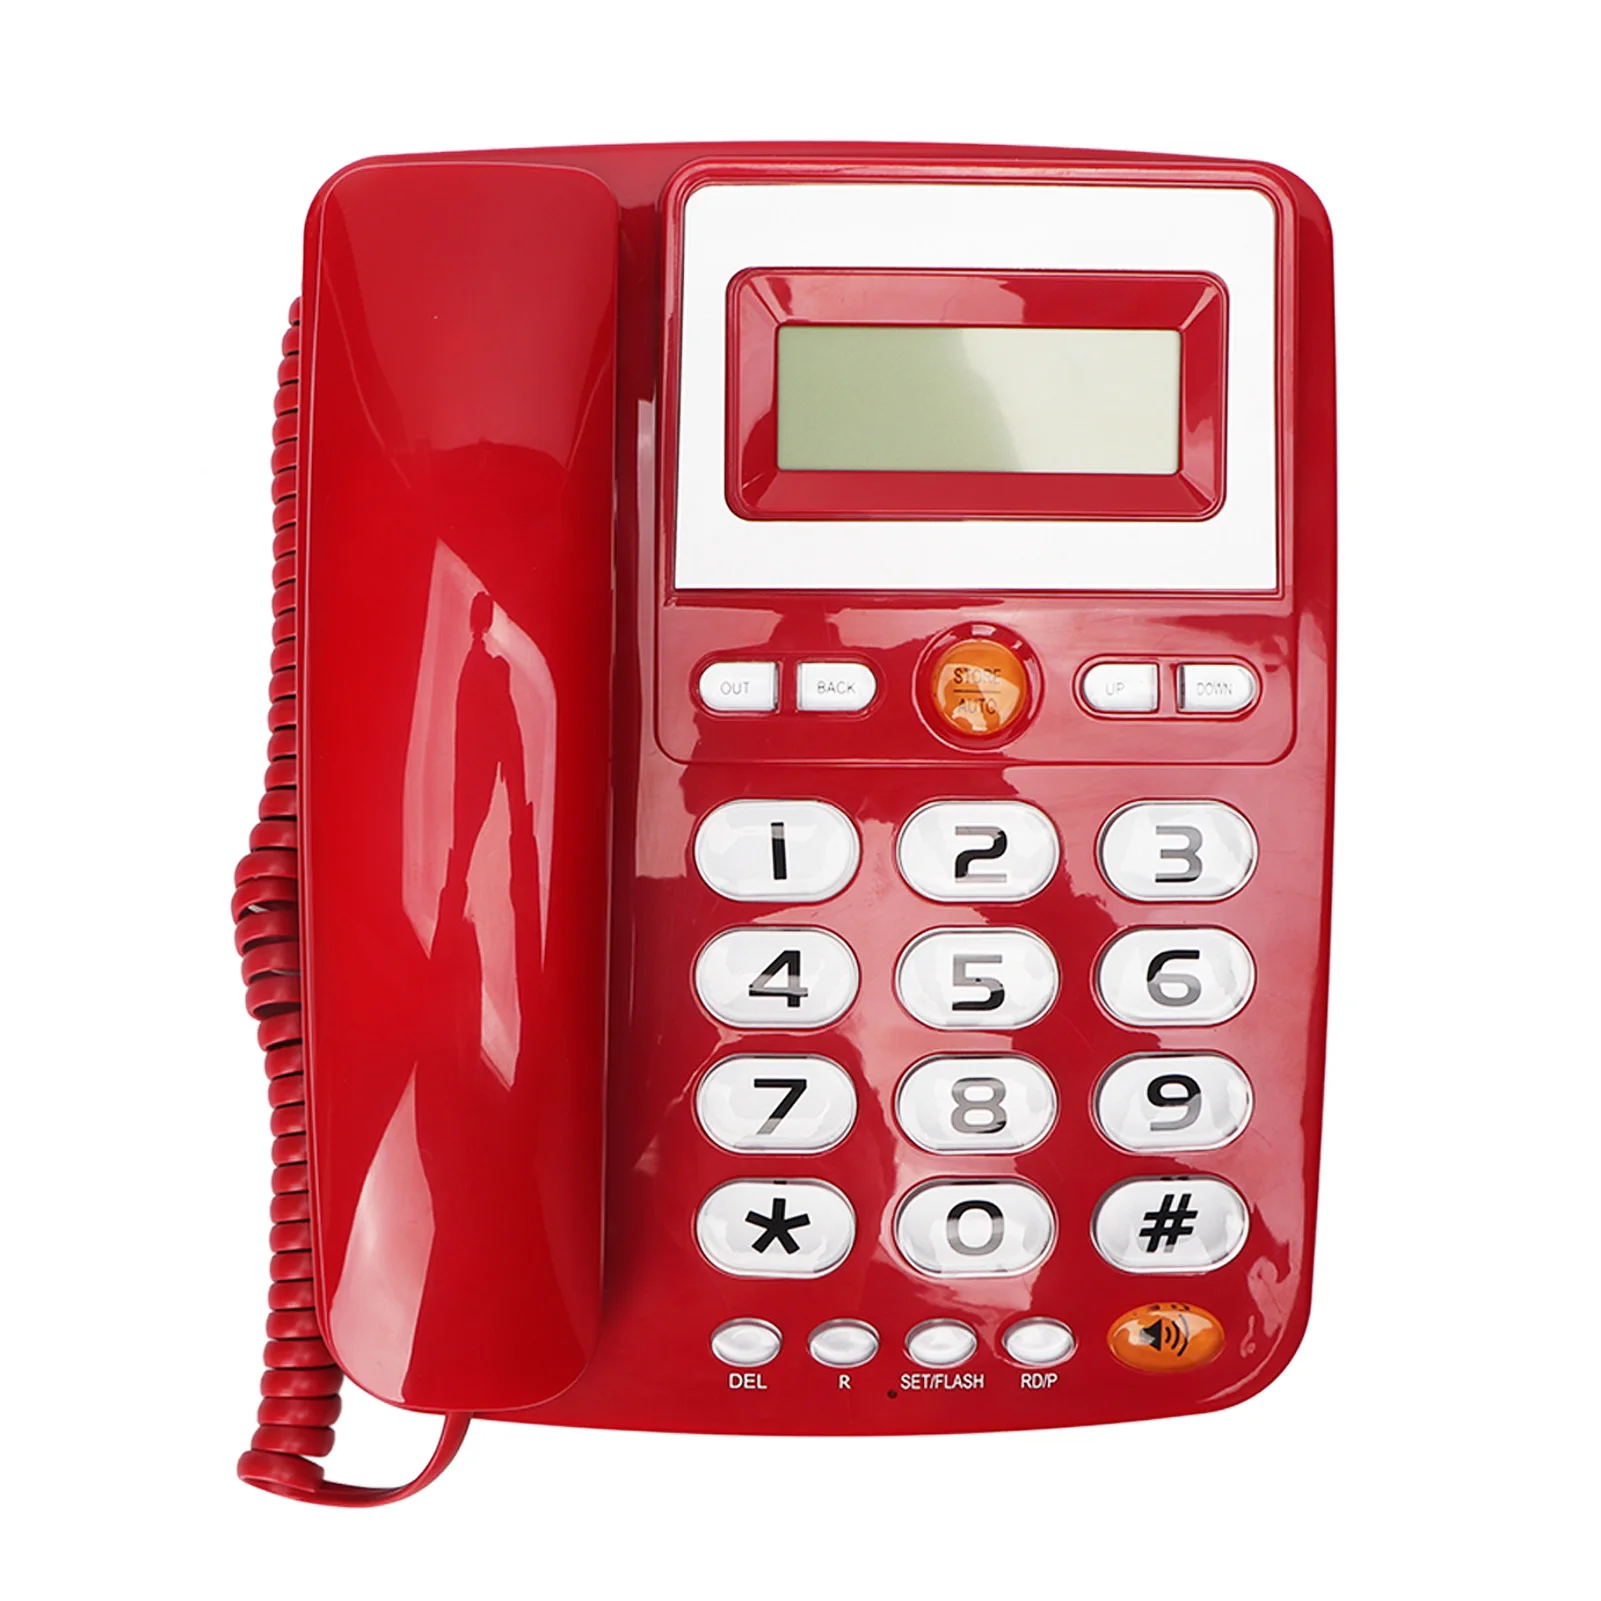 

Проводной телефон с большими кнопками, телефонные звонки без помощи рук, проводной телефон с функцией односенсорного набора номера и отображения ID вызова